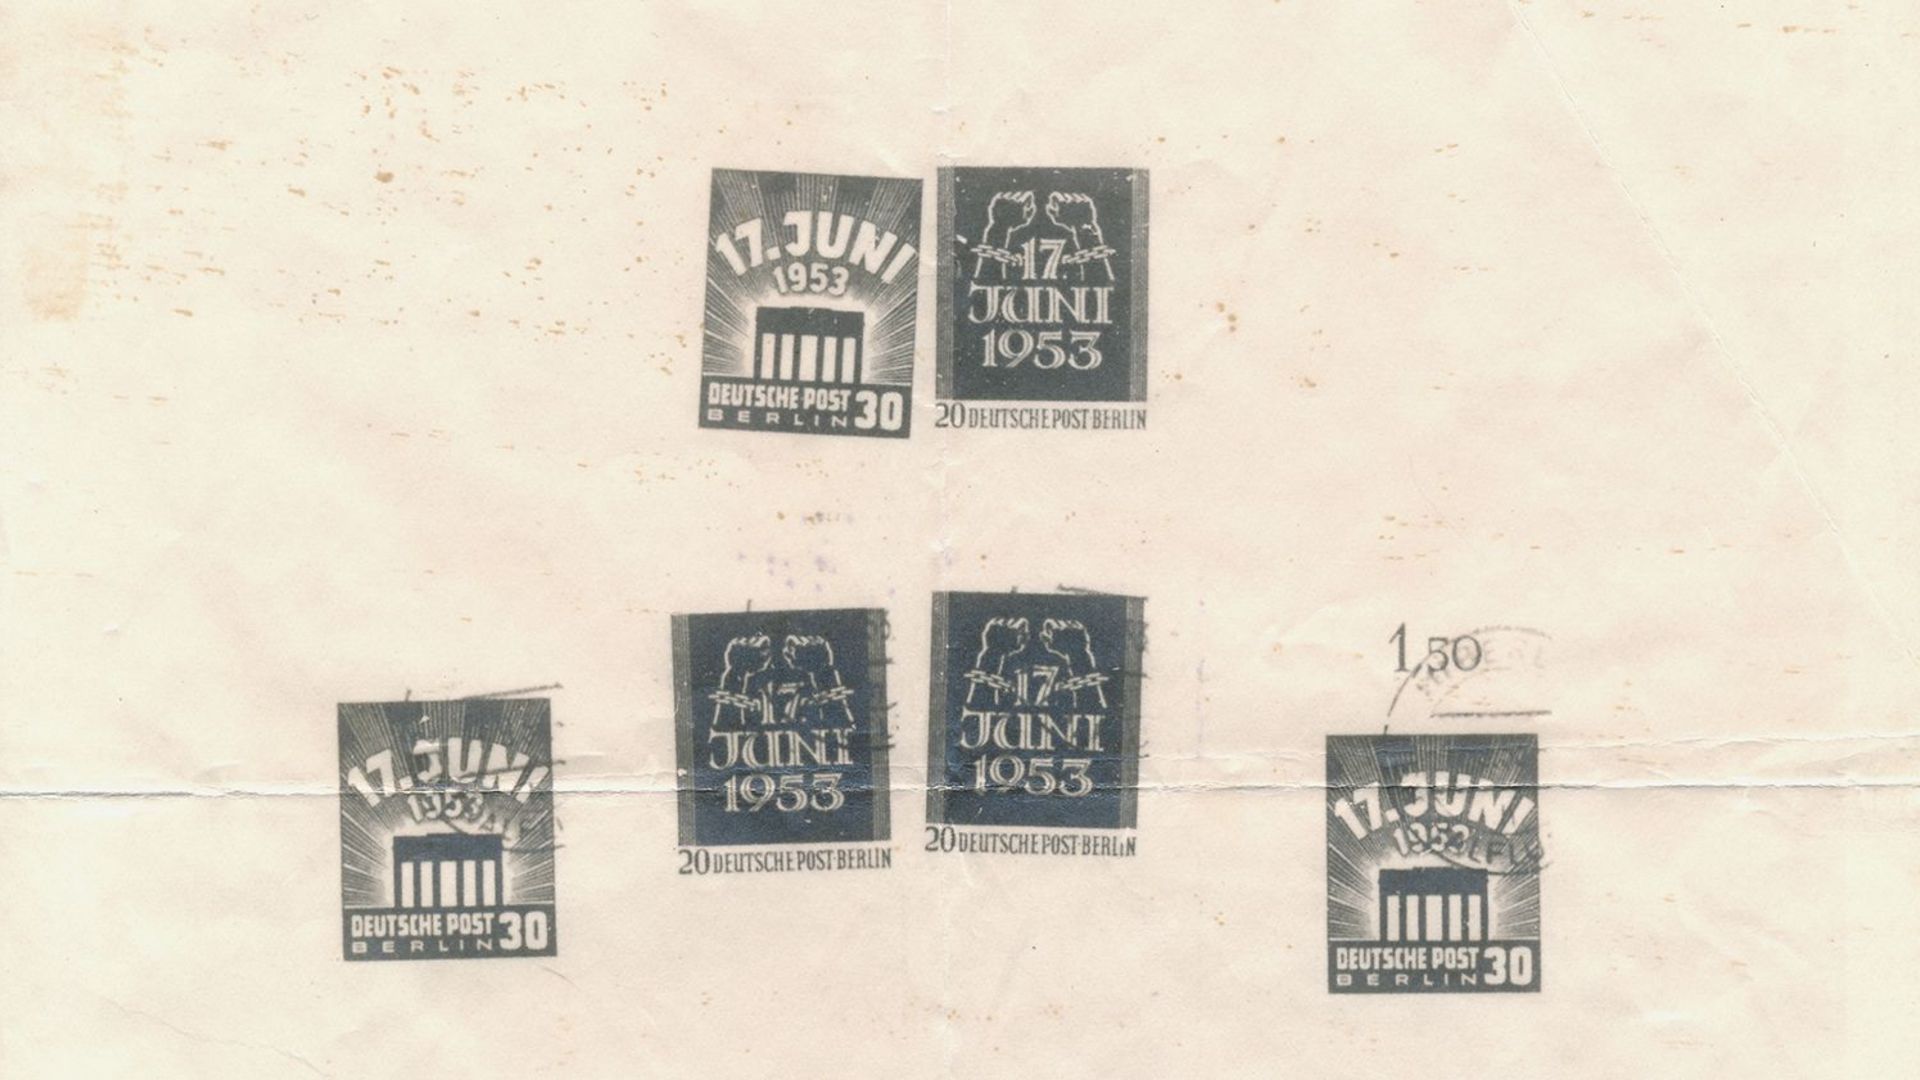 [Es ist eine schwarzweiße Kopie von zehn abgestempelten Briefmarken zu sehen, die ungleichmäßig verteilt sind. Dabei handelt es sich zum einen um eine 30 Pfennig Marke, auf der über dem Brandenburger Tor "17. Juni 1953" zu lesen ist. Die 20 Pfennig Marke zeigt zwei Fäuste in gesprengten Ketten, hier ist "17. Juni 1953" in der Mitte platziert. Beide Sondermarken wurden von der Deutschen Post Berlin ausgegeben.